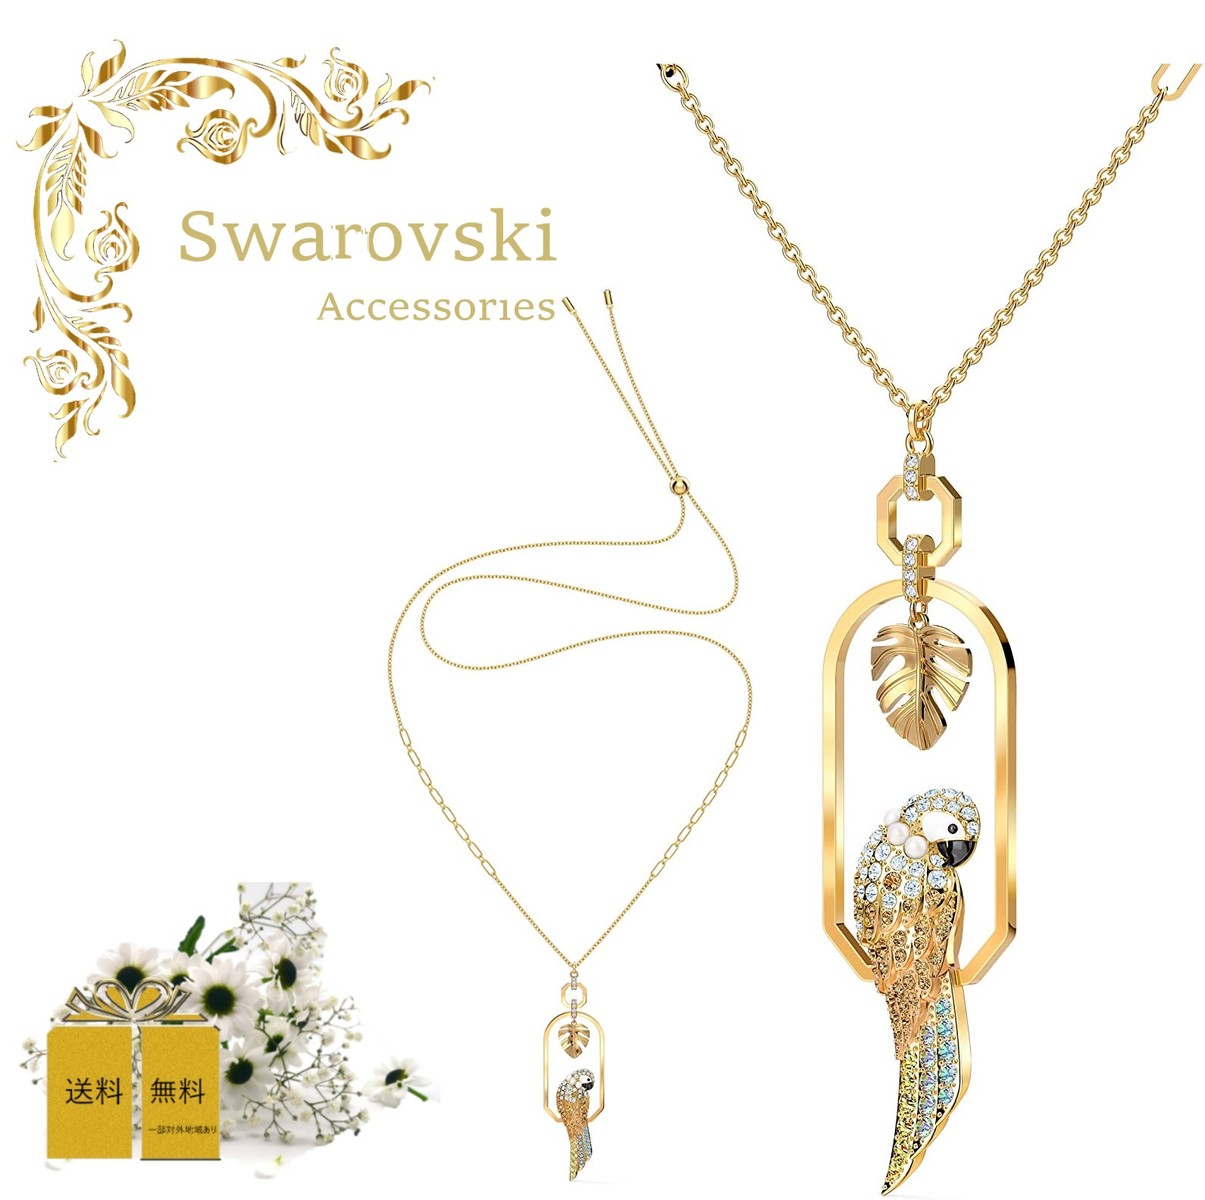 スワロフスキー SWAROVSKI Tropical Parrot ネックレス 5512686 オウム マルチカラー ゴールドトーン コーティング リーフ レディース プレゼント 誕生日 記念日 アニバーサリー ラグジュアリー